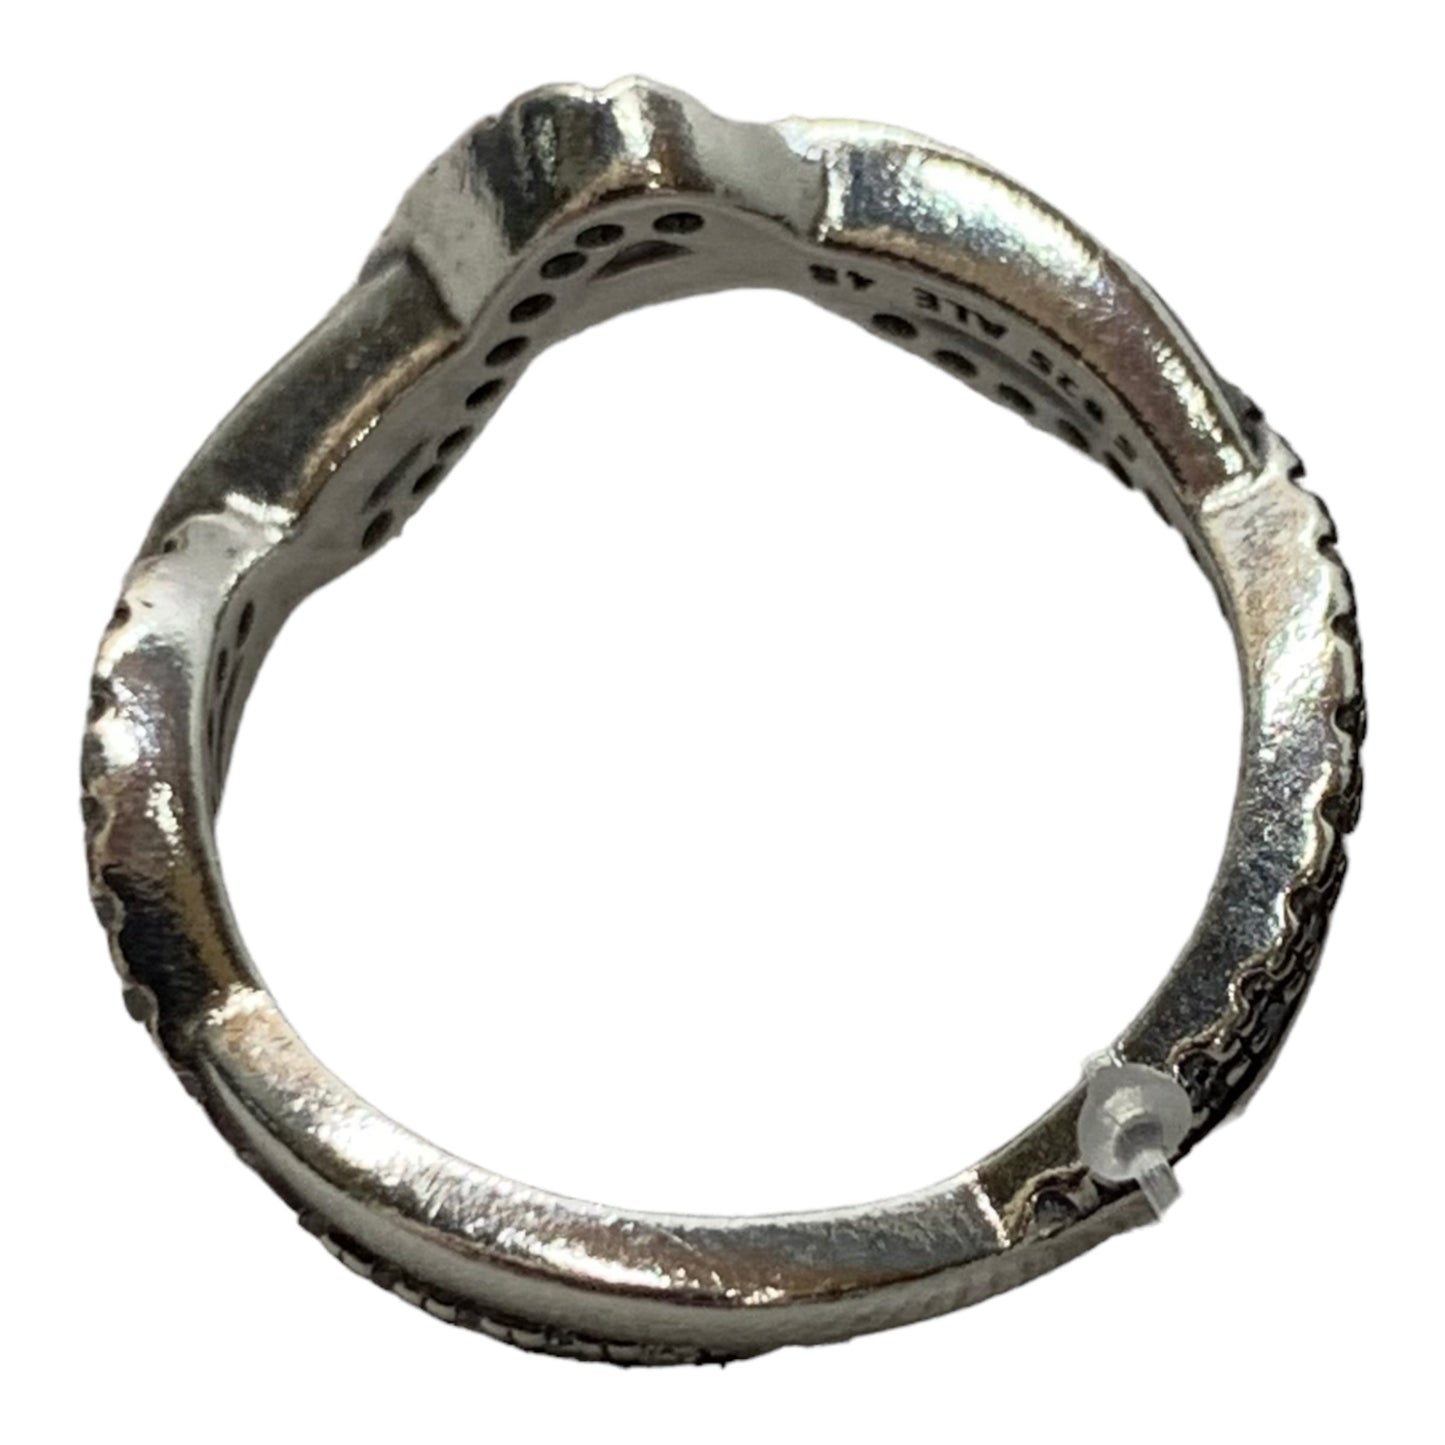 Ring Designer By Pandora